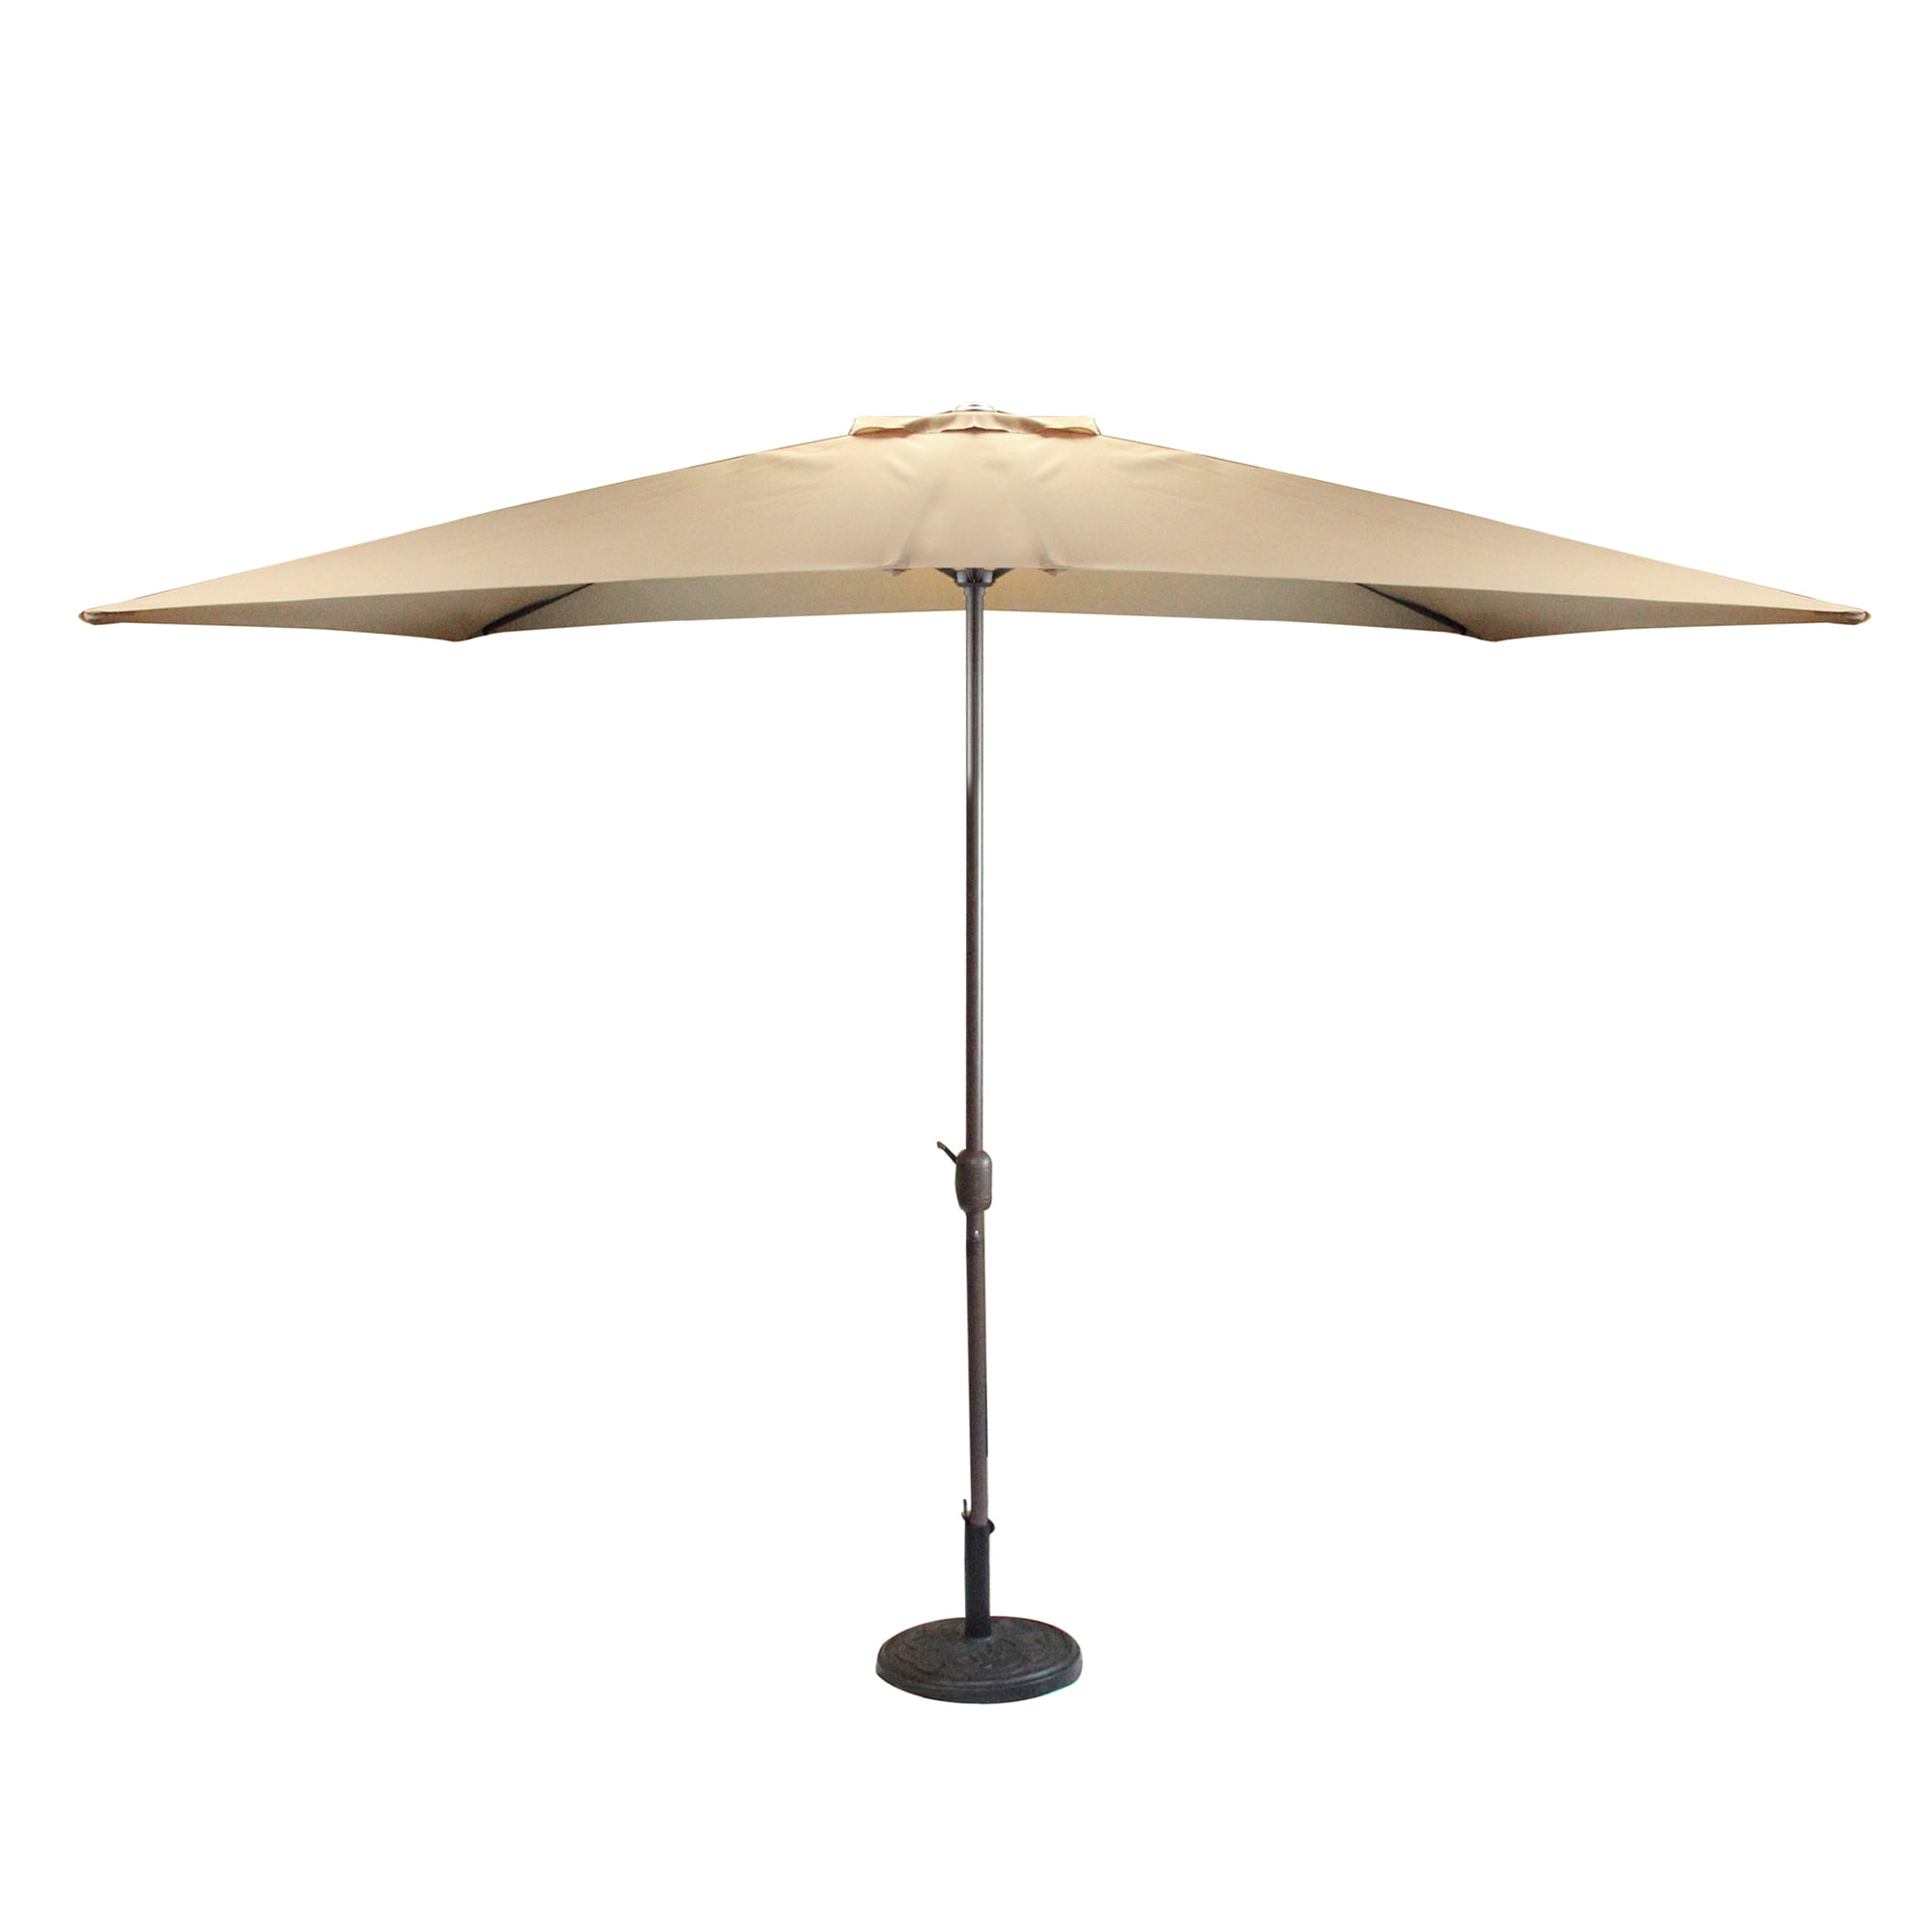 Rennen bijzonder Aanvrager Northlight 8.5' Outdoor Patio Market Umbrella with Hand Crank - Brown -  Walmart.com